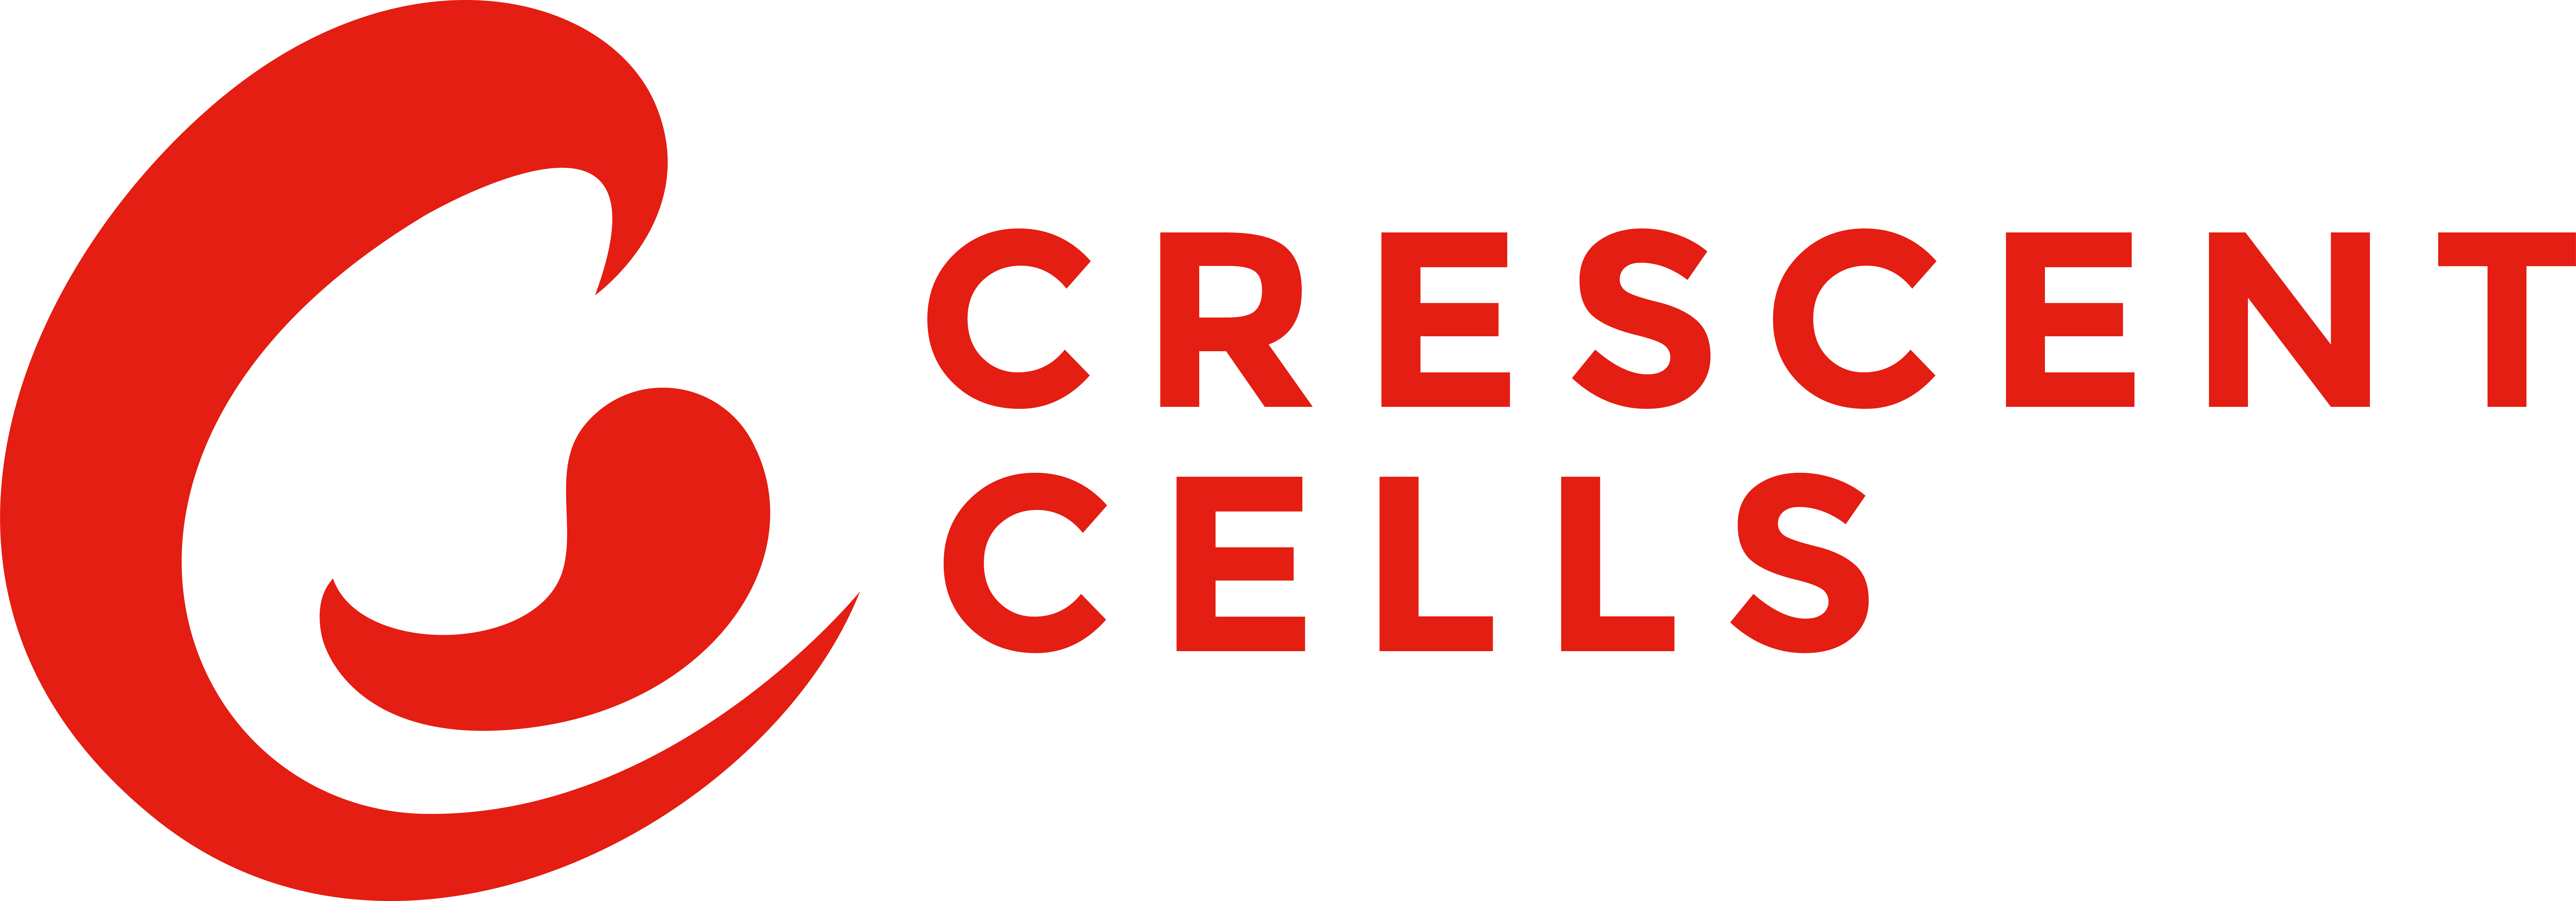 Crescent Cells